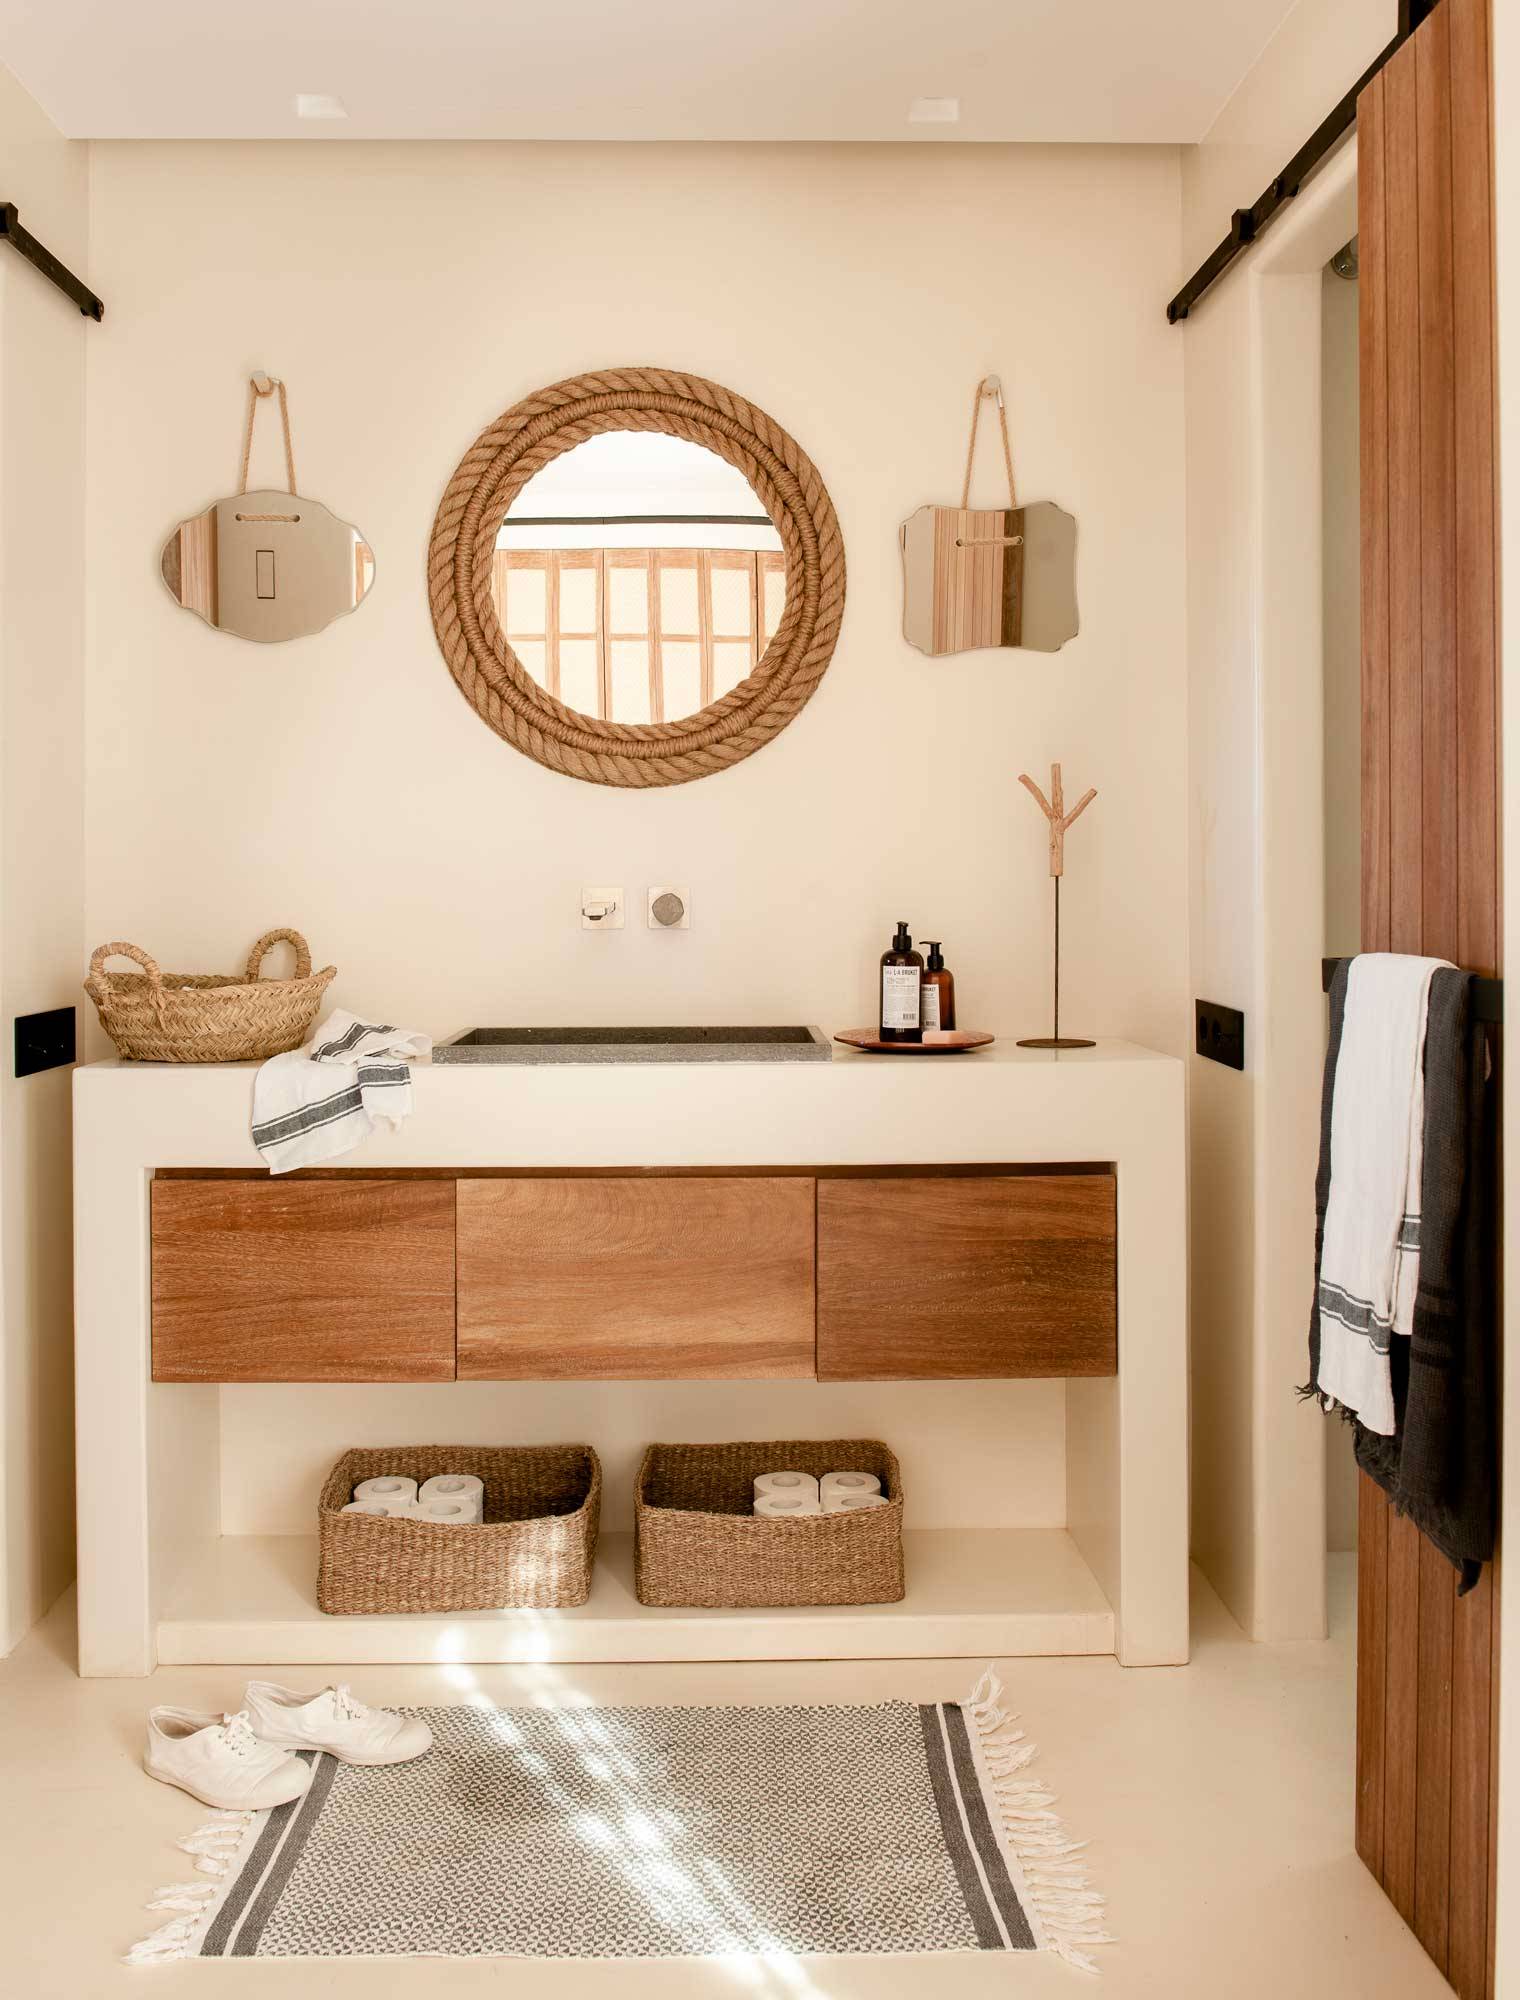 Baño reformado con pavimento de microcemento y mueble de madera. 